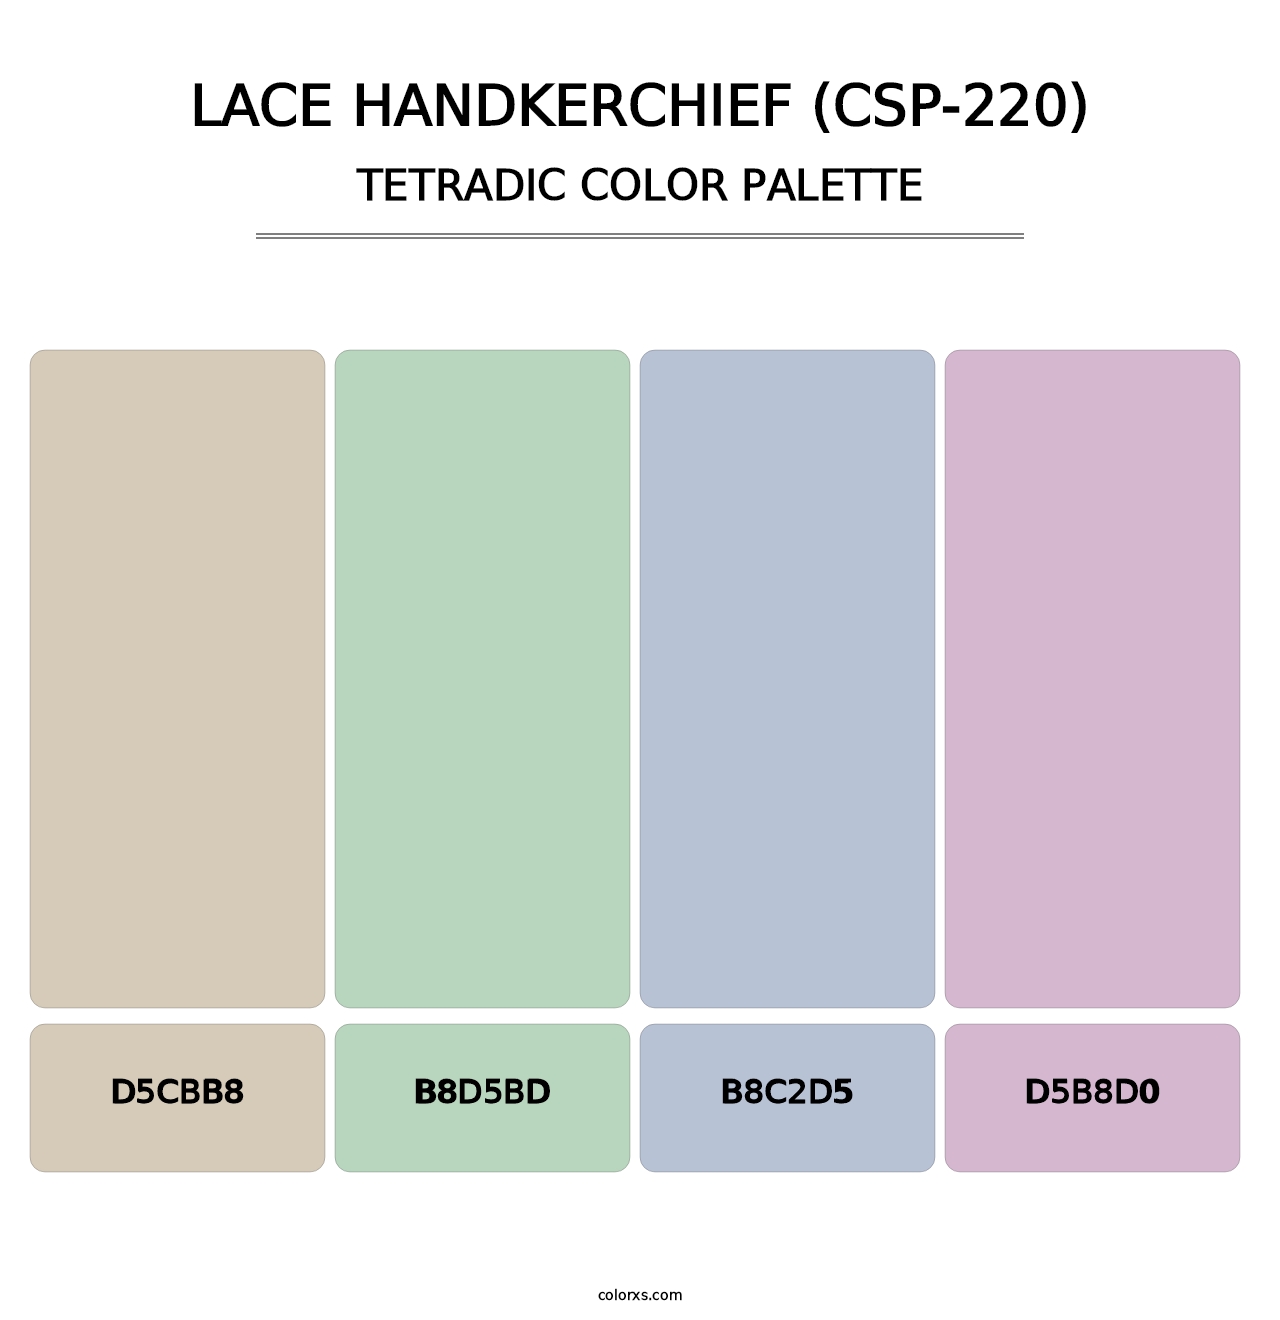 Lace Handkerchief (CSP-220) - Tetradic Color Palette